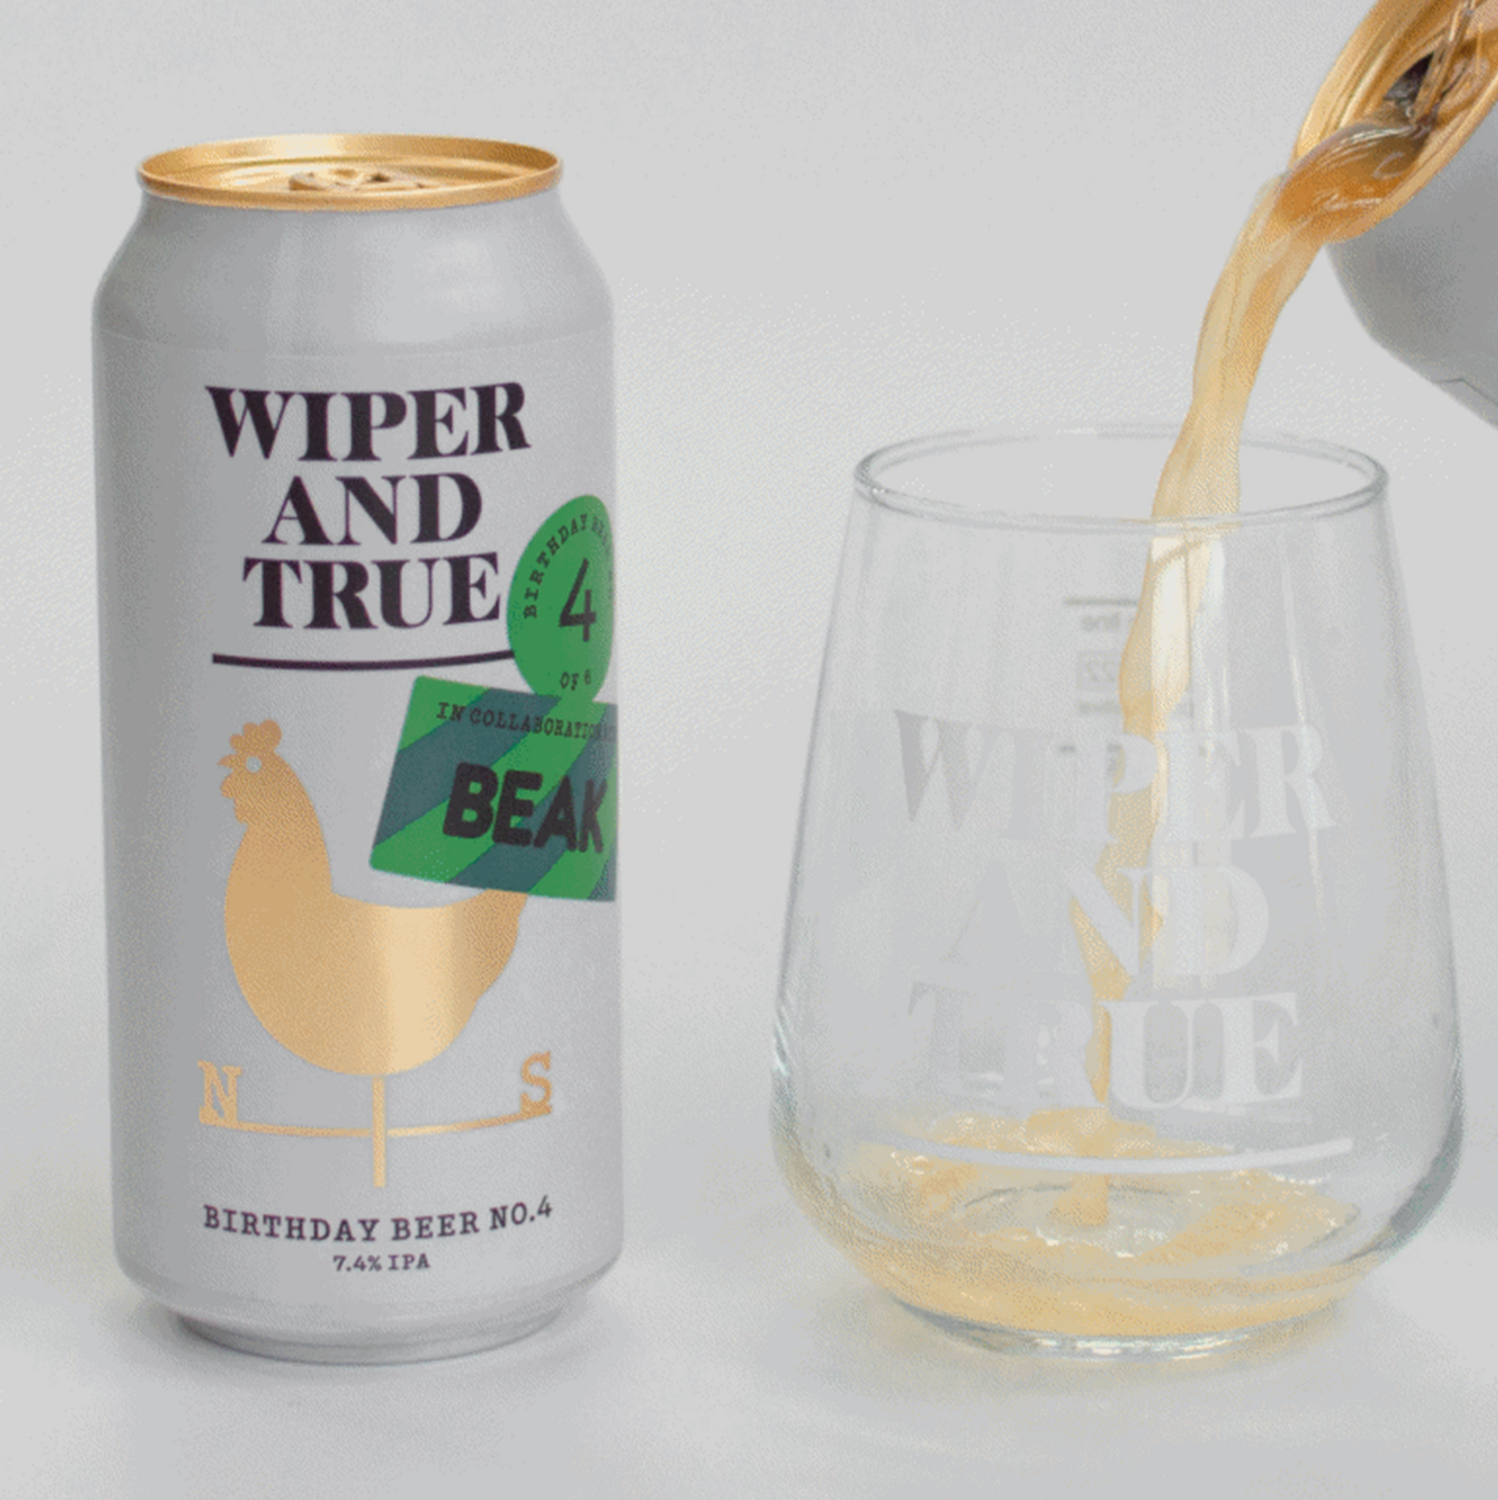 Wiper & True x Beak Birthday Beer No.4 IPA